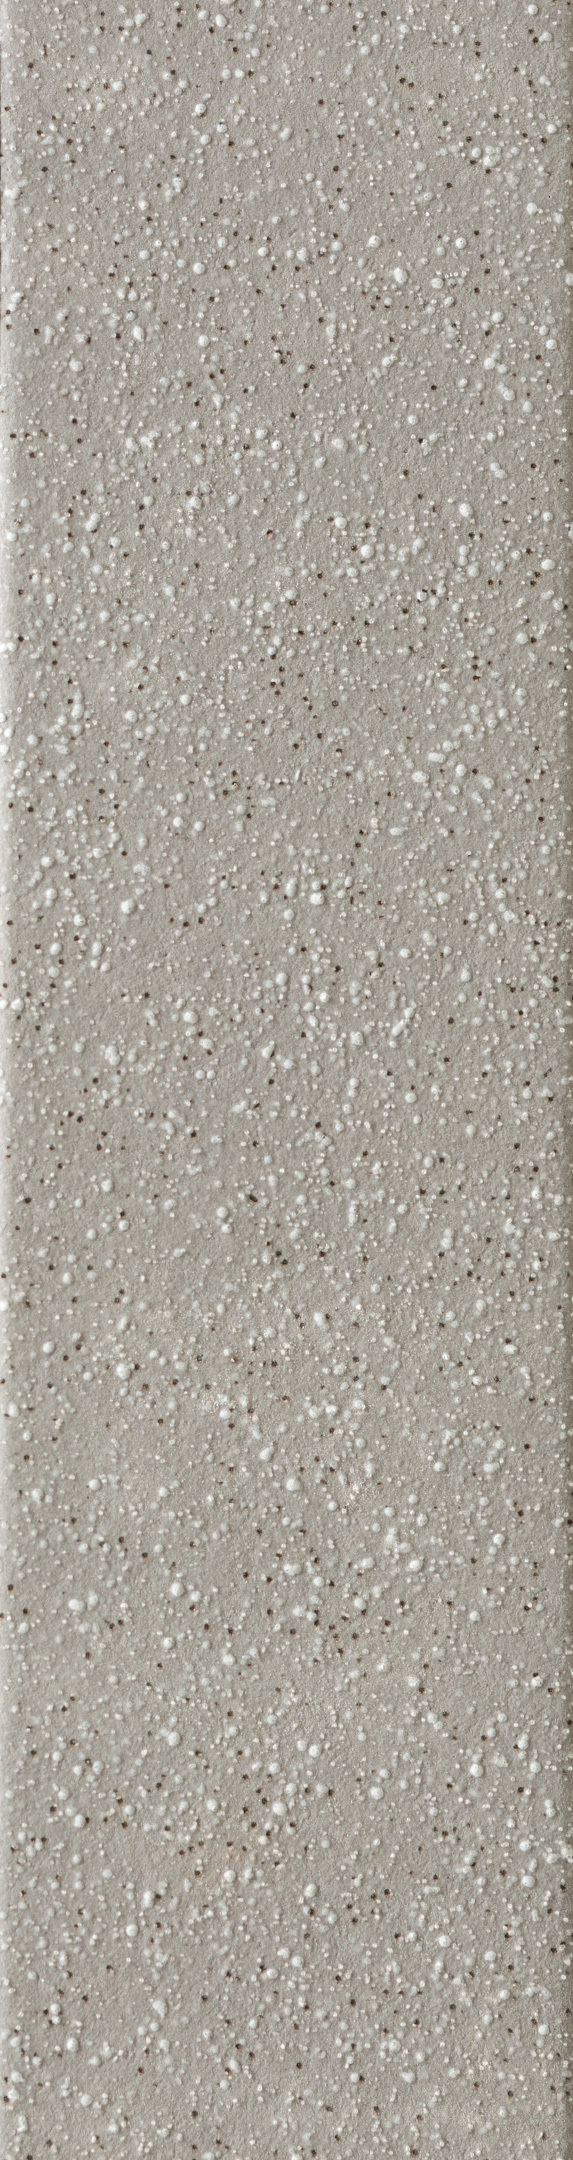 Клинкерная плитка Керамин Мичиган 1 серая 245х65х7 мм (34 шт.=0,54 кв.м) клинкерная плитка керамин мичиган 7 белая 245х65х7 мм 34 шт 0 54 кв м